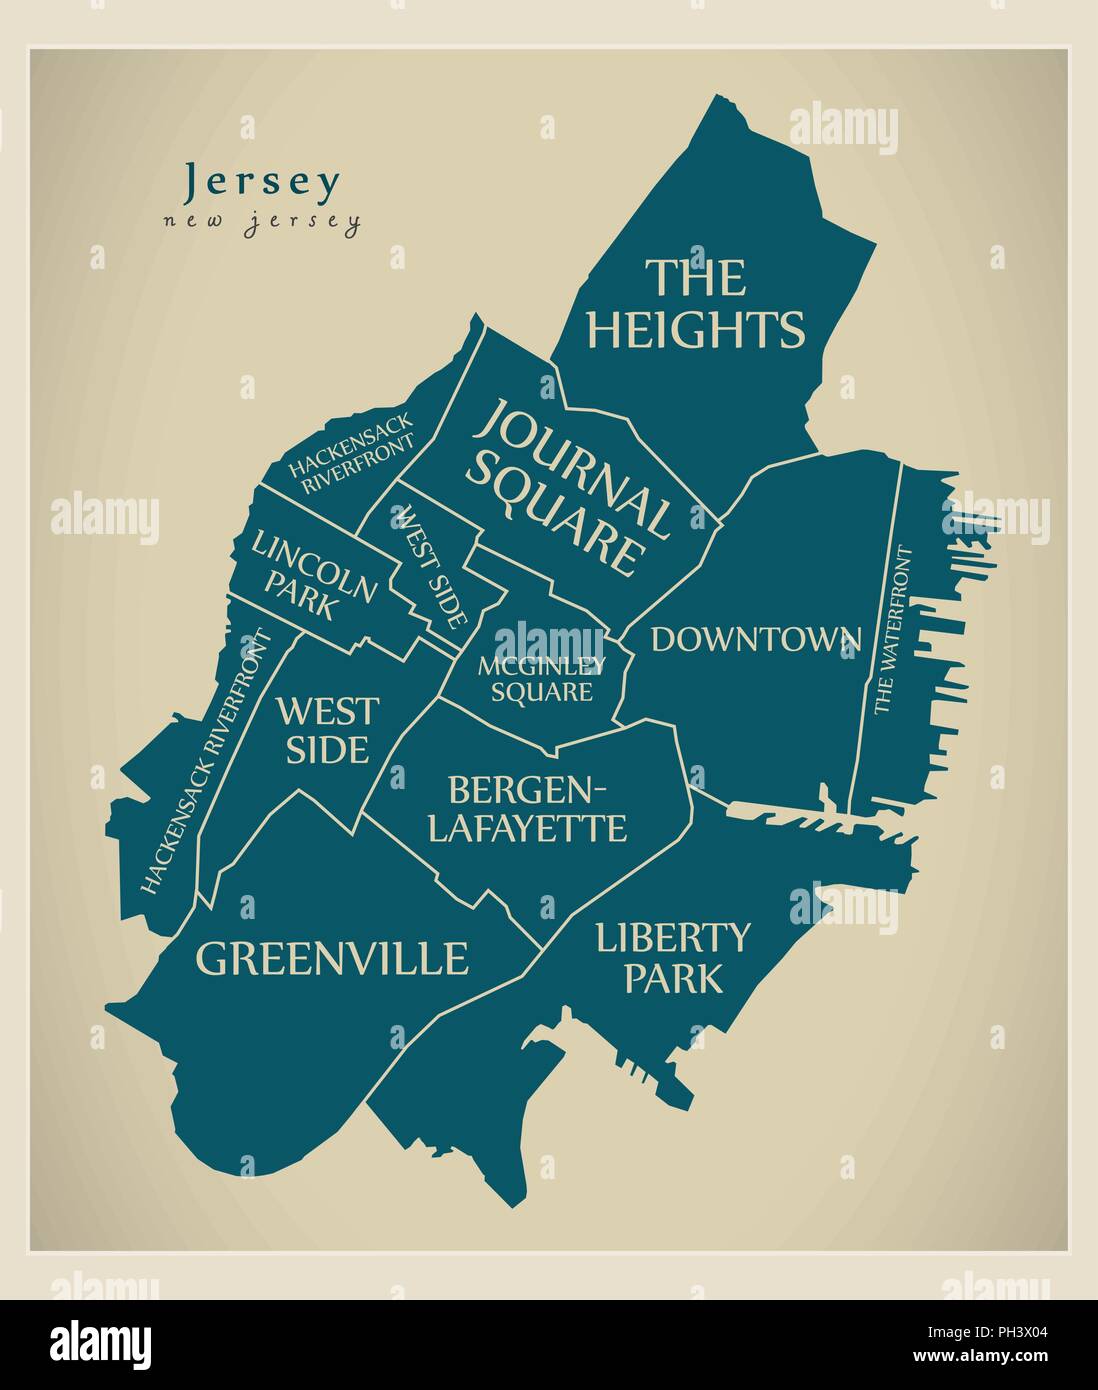 Città moderna mappa - Jersey New Jersey città degli Stati Uniti con i quartieri e titoli Illustrazione Vettoriale